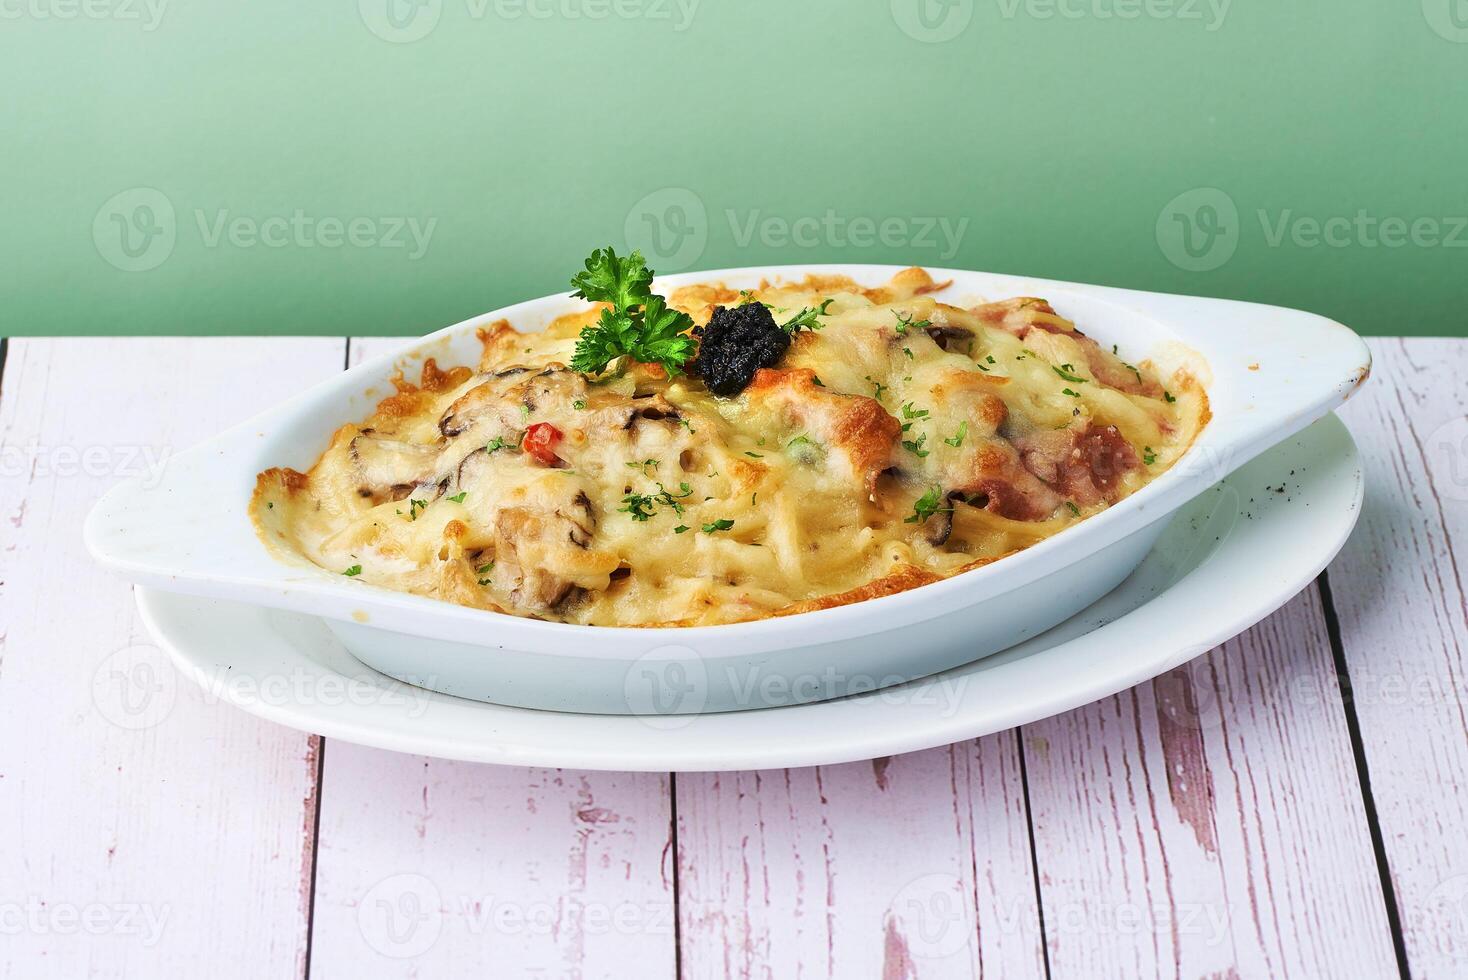 al horno pasta trufa crema con queso, aceituna, pasta, pollo y vegetales gratén en horneando plato foto